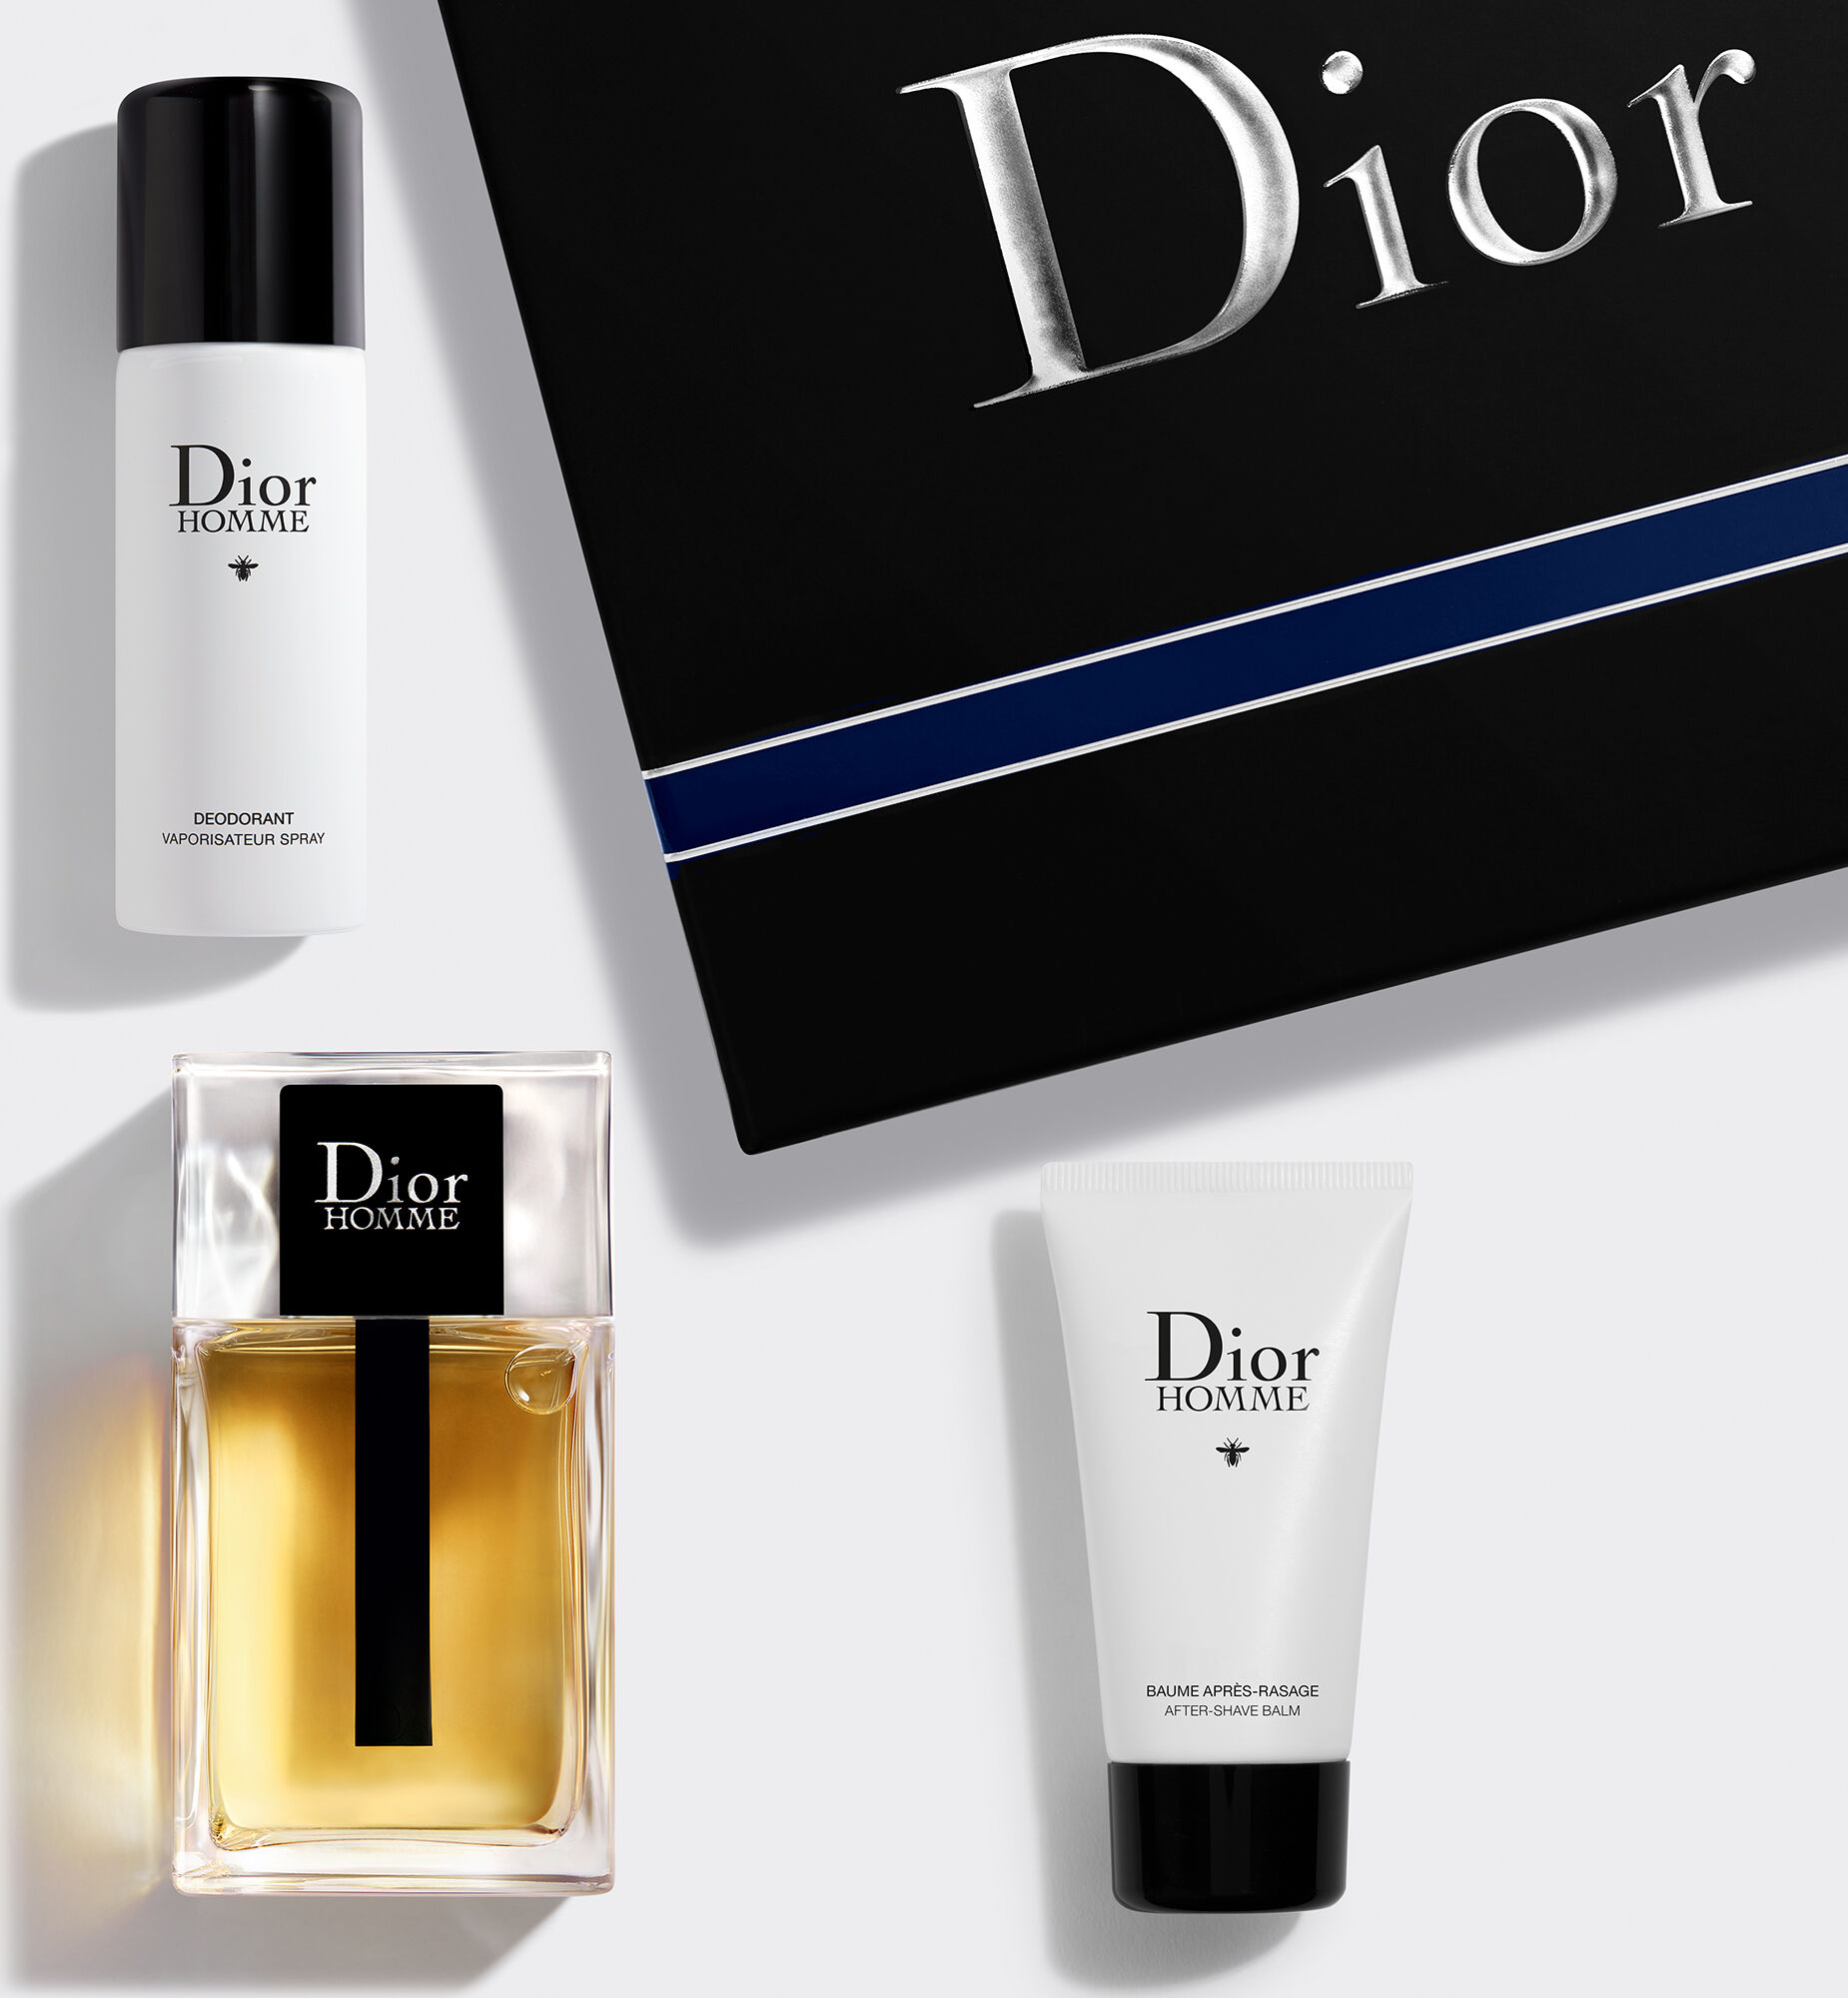 Dior Homme  Mens Fragrance  Fragrance  DIOR